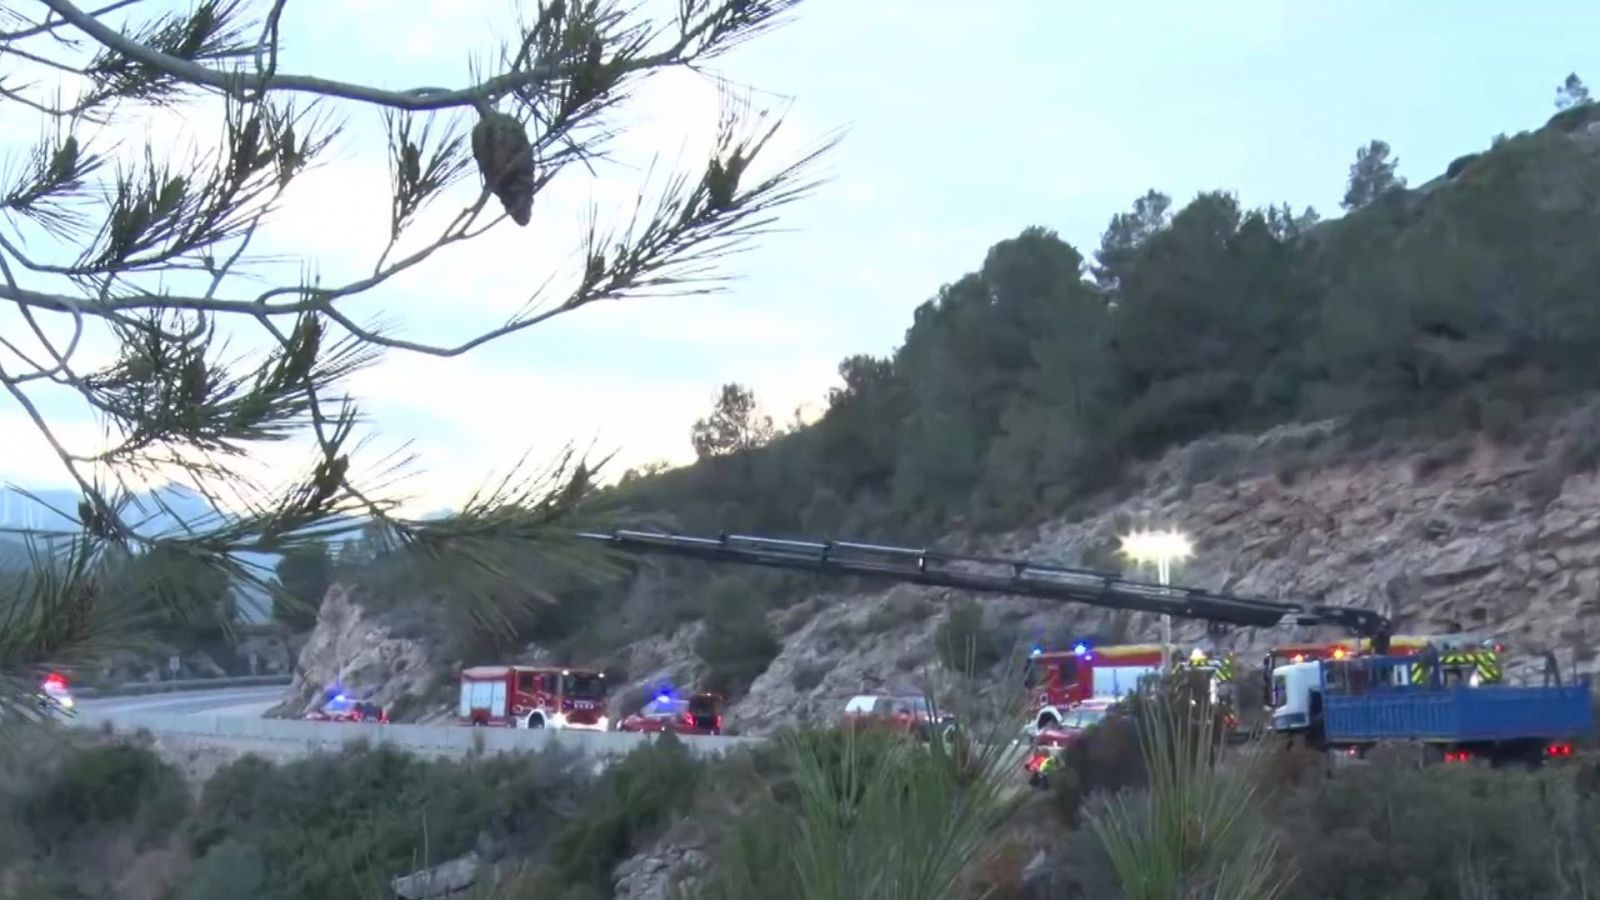 Mueren tres menores al caer un coche por un barranco e incendiarse en Camarles, Tarragona - Ver ahora